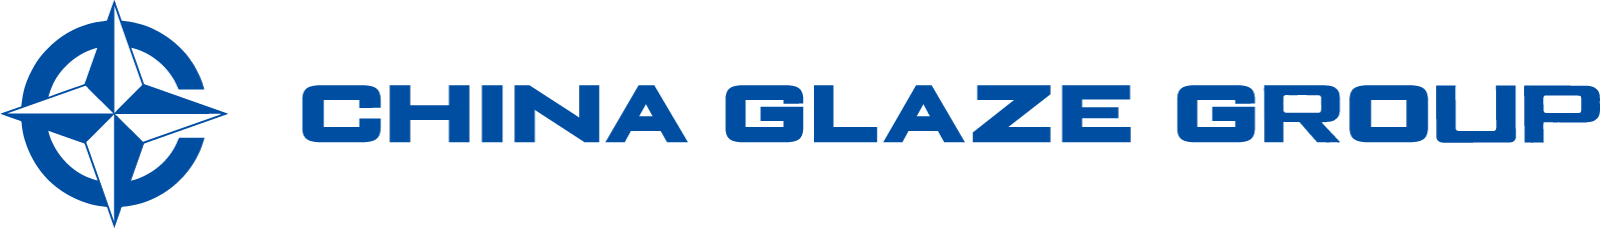 BtoB向け高品質なガラス粉末（ガラスフリット）やガラスパウダーやセラミックスフリット、セラミックスピグメント、釉薬、顔料を製造するChina Glaze Co., Ltd.（和名：チャイナグレーズ株式会社）は台湾本社のガラス粉末（ガラスフリット）やセラミックスピグメントの製造カンパニー。 導電ペースト用ガラス粉末（ガラスフリット）、自動車LEDライト用蛍光体分散ガラス、プロジェクター用蛍光体分散ガラス、結晶化ガラス壁材・床材（人工大理石調ガラス）のニュークリストン、建材デジタルプリントカラー顔料などを製造してます。ガラス粉末（ガラスフリット）、ガラスパウダー、ガラスフリット、ガラス微粉末、セラミック釉薬を利用した、LTCC、PiG、顔料、建材、などの材料として研究開発から製造をサポートします。